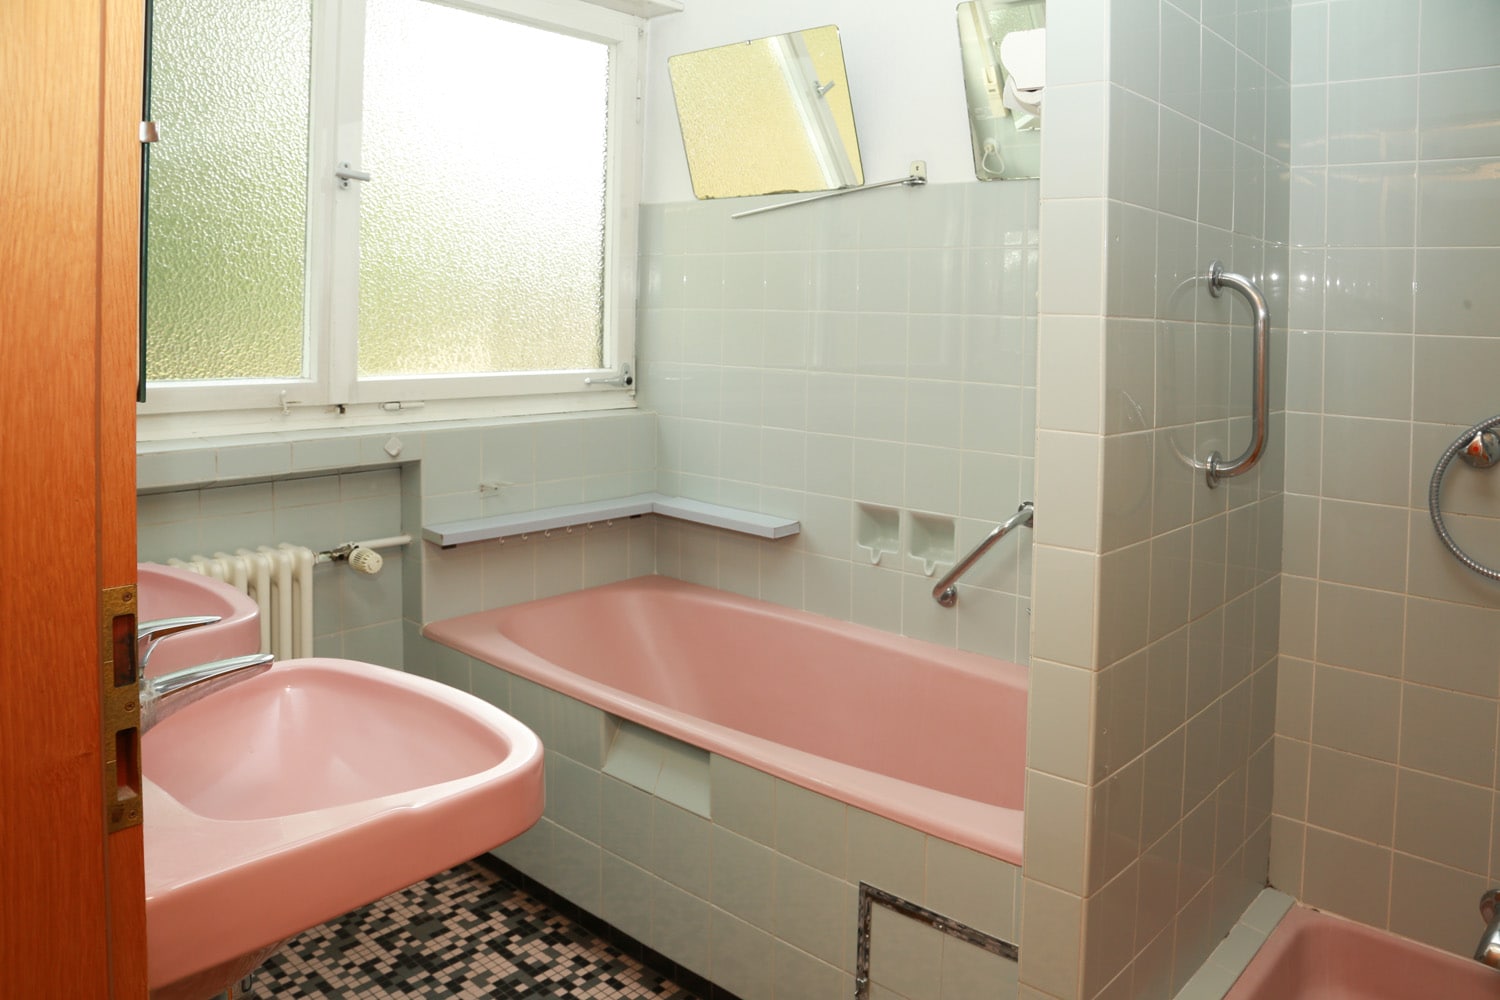 Kundenbild eines typischen Altbau-Badezimmers, welches von PURE3D digital gestaged werden sollte.